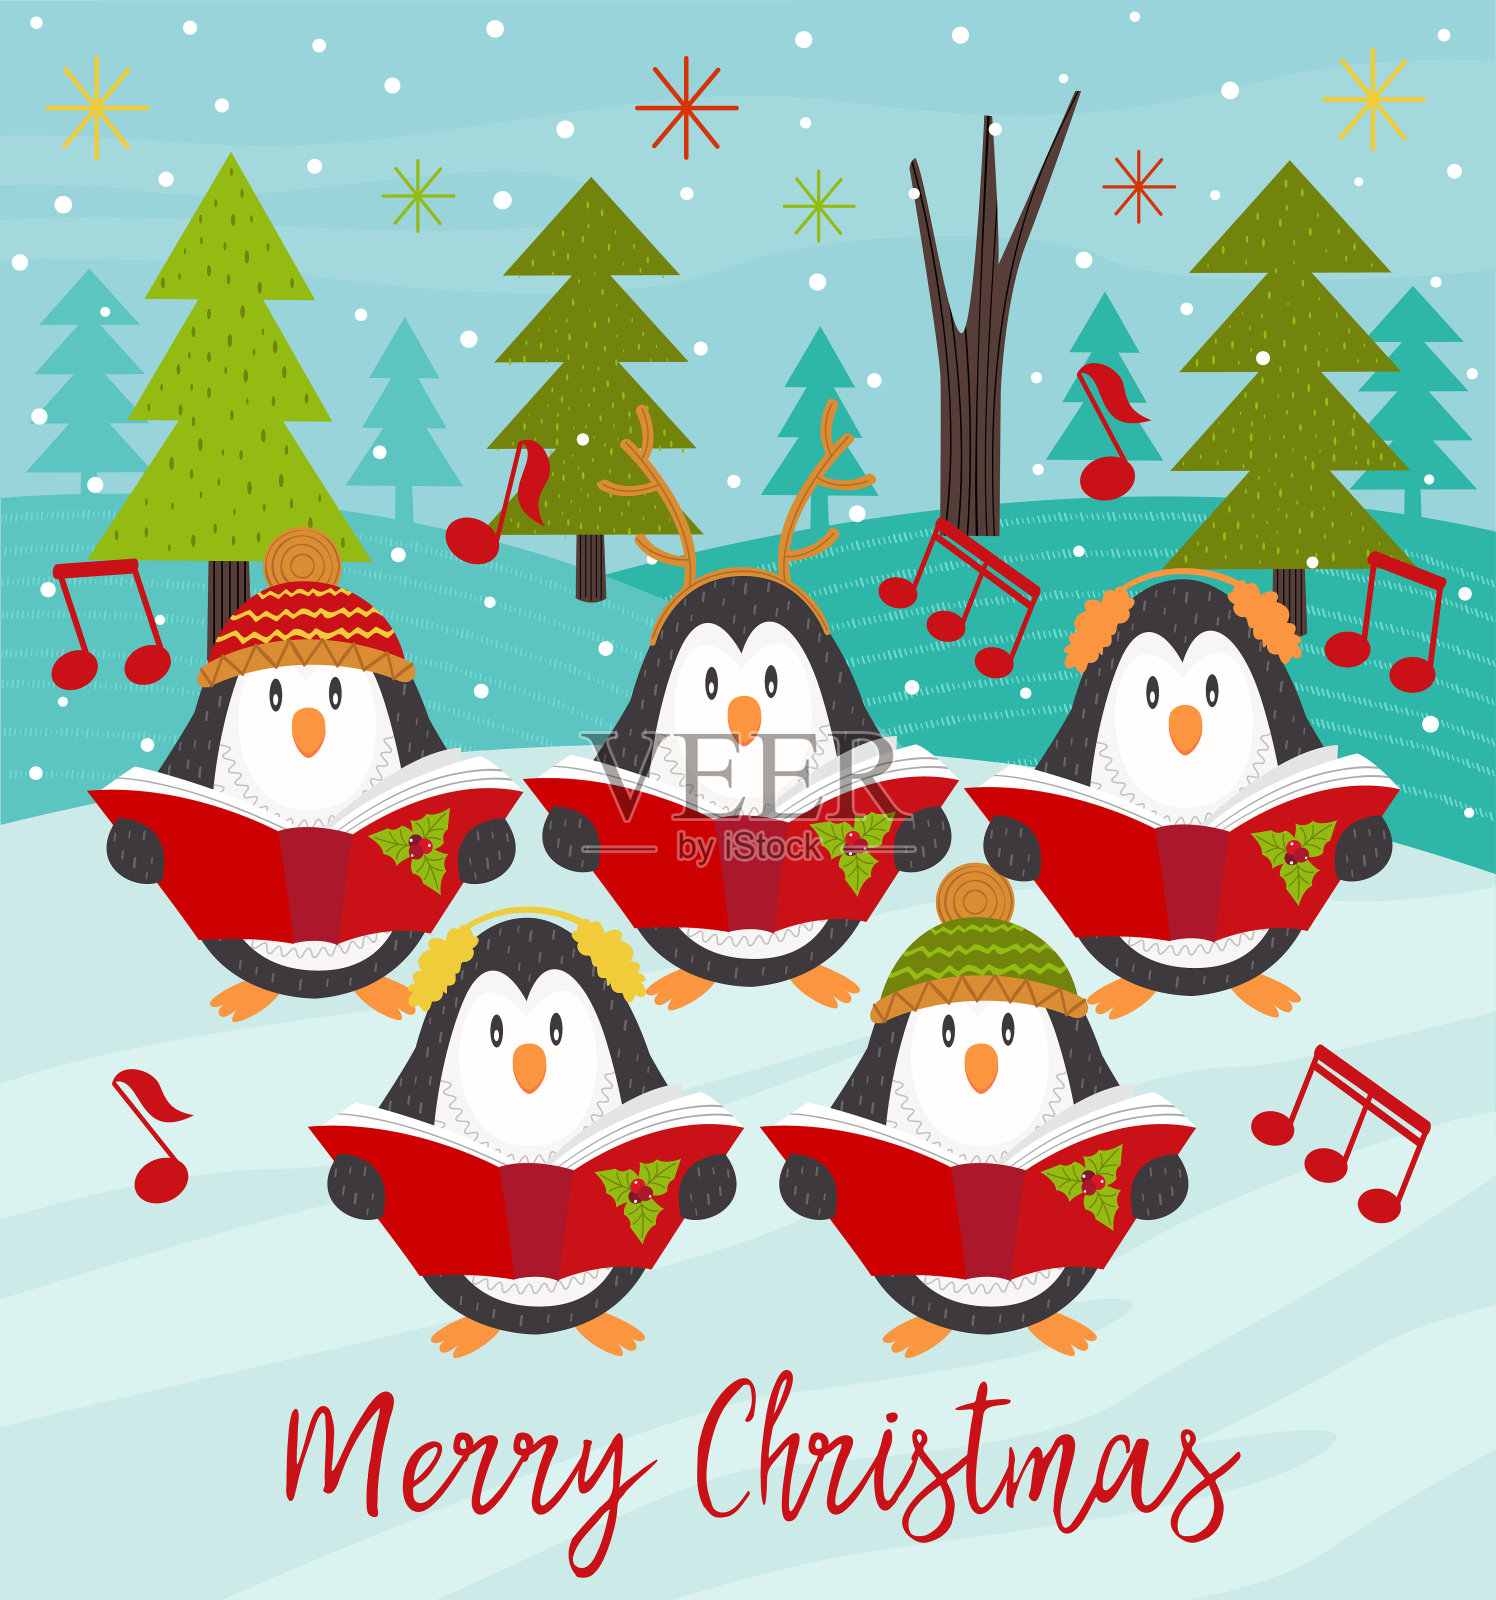 企鹅合唱团圣诞贺卡插画图片素材